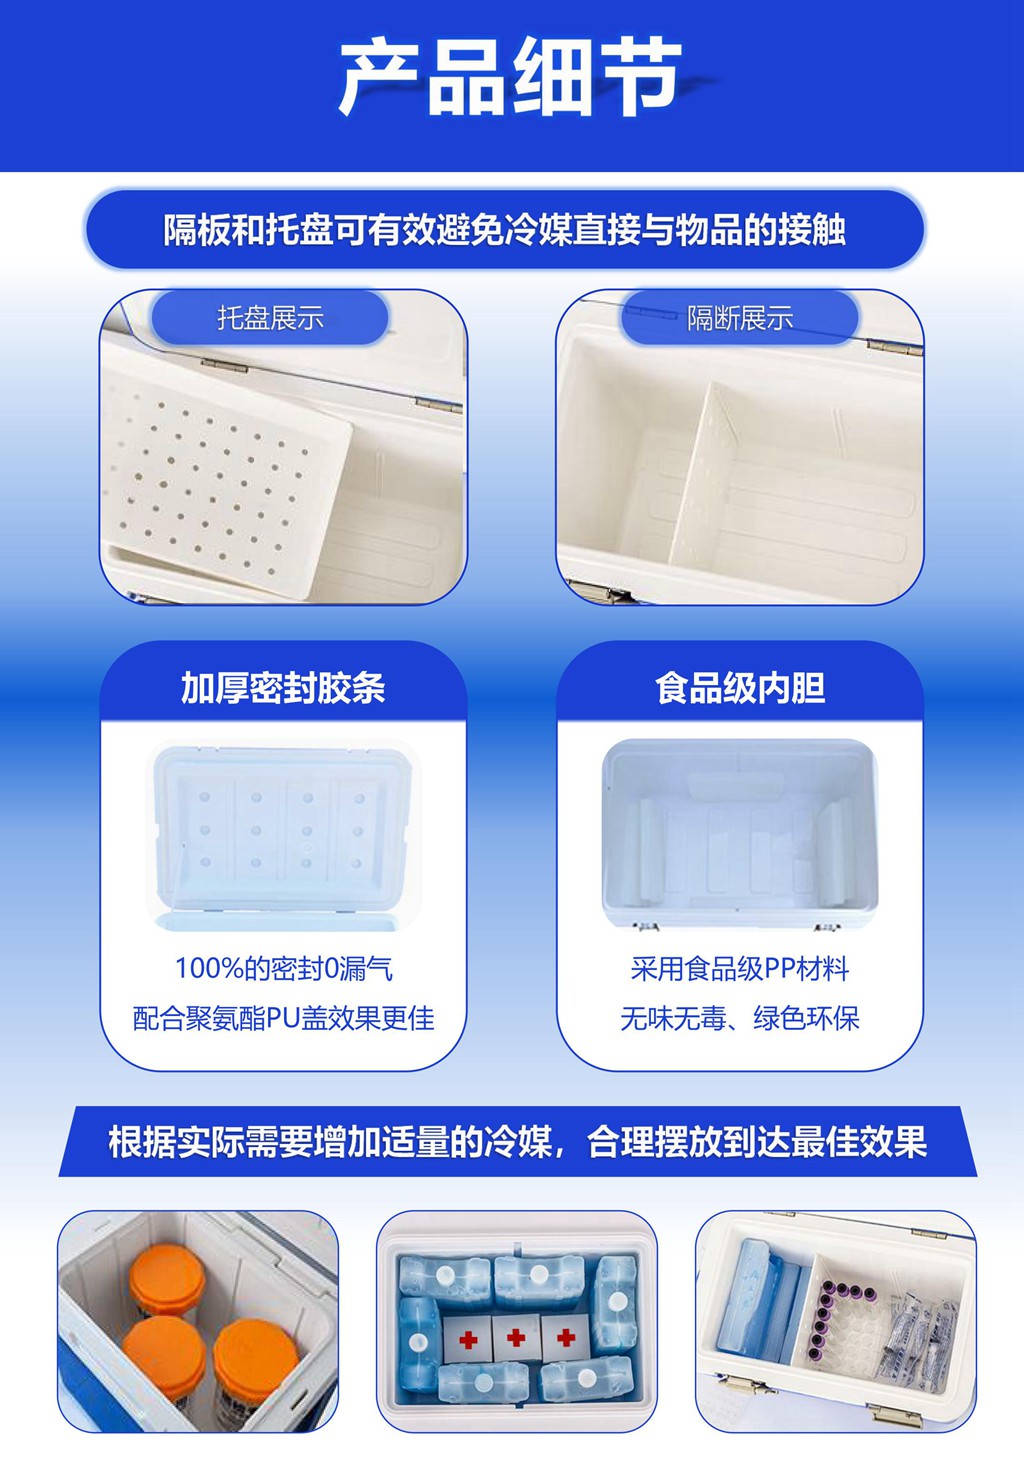 无锡金蜜联科技有限公司 智能箱 GSP 温湿度记录仪 冷藏箱 疫苗箱